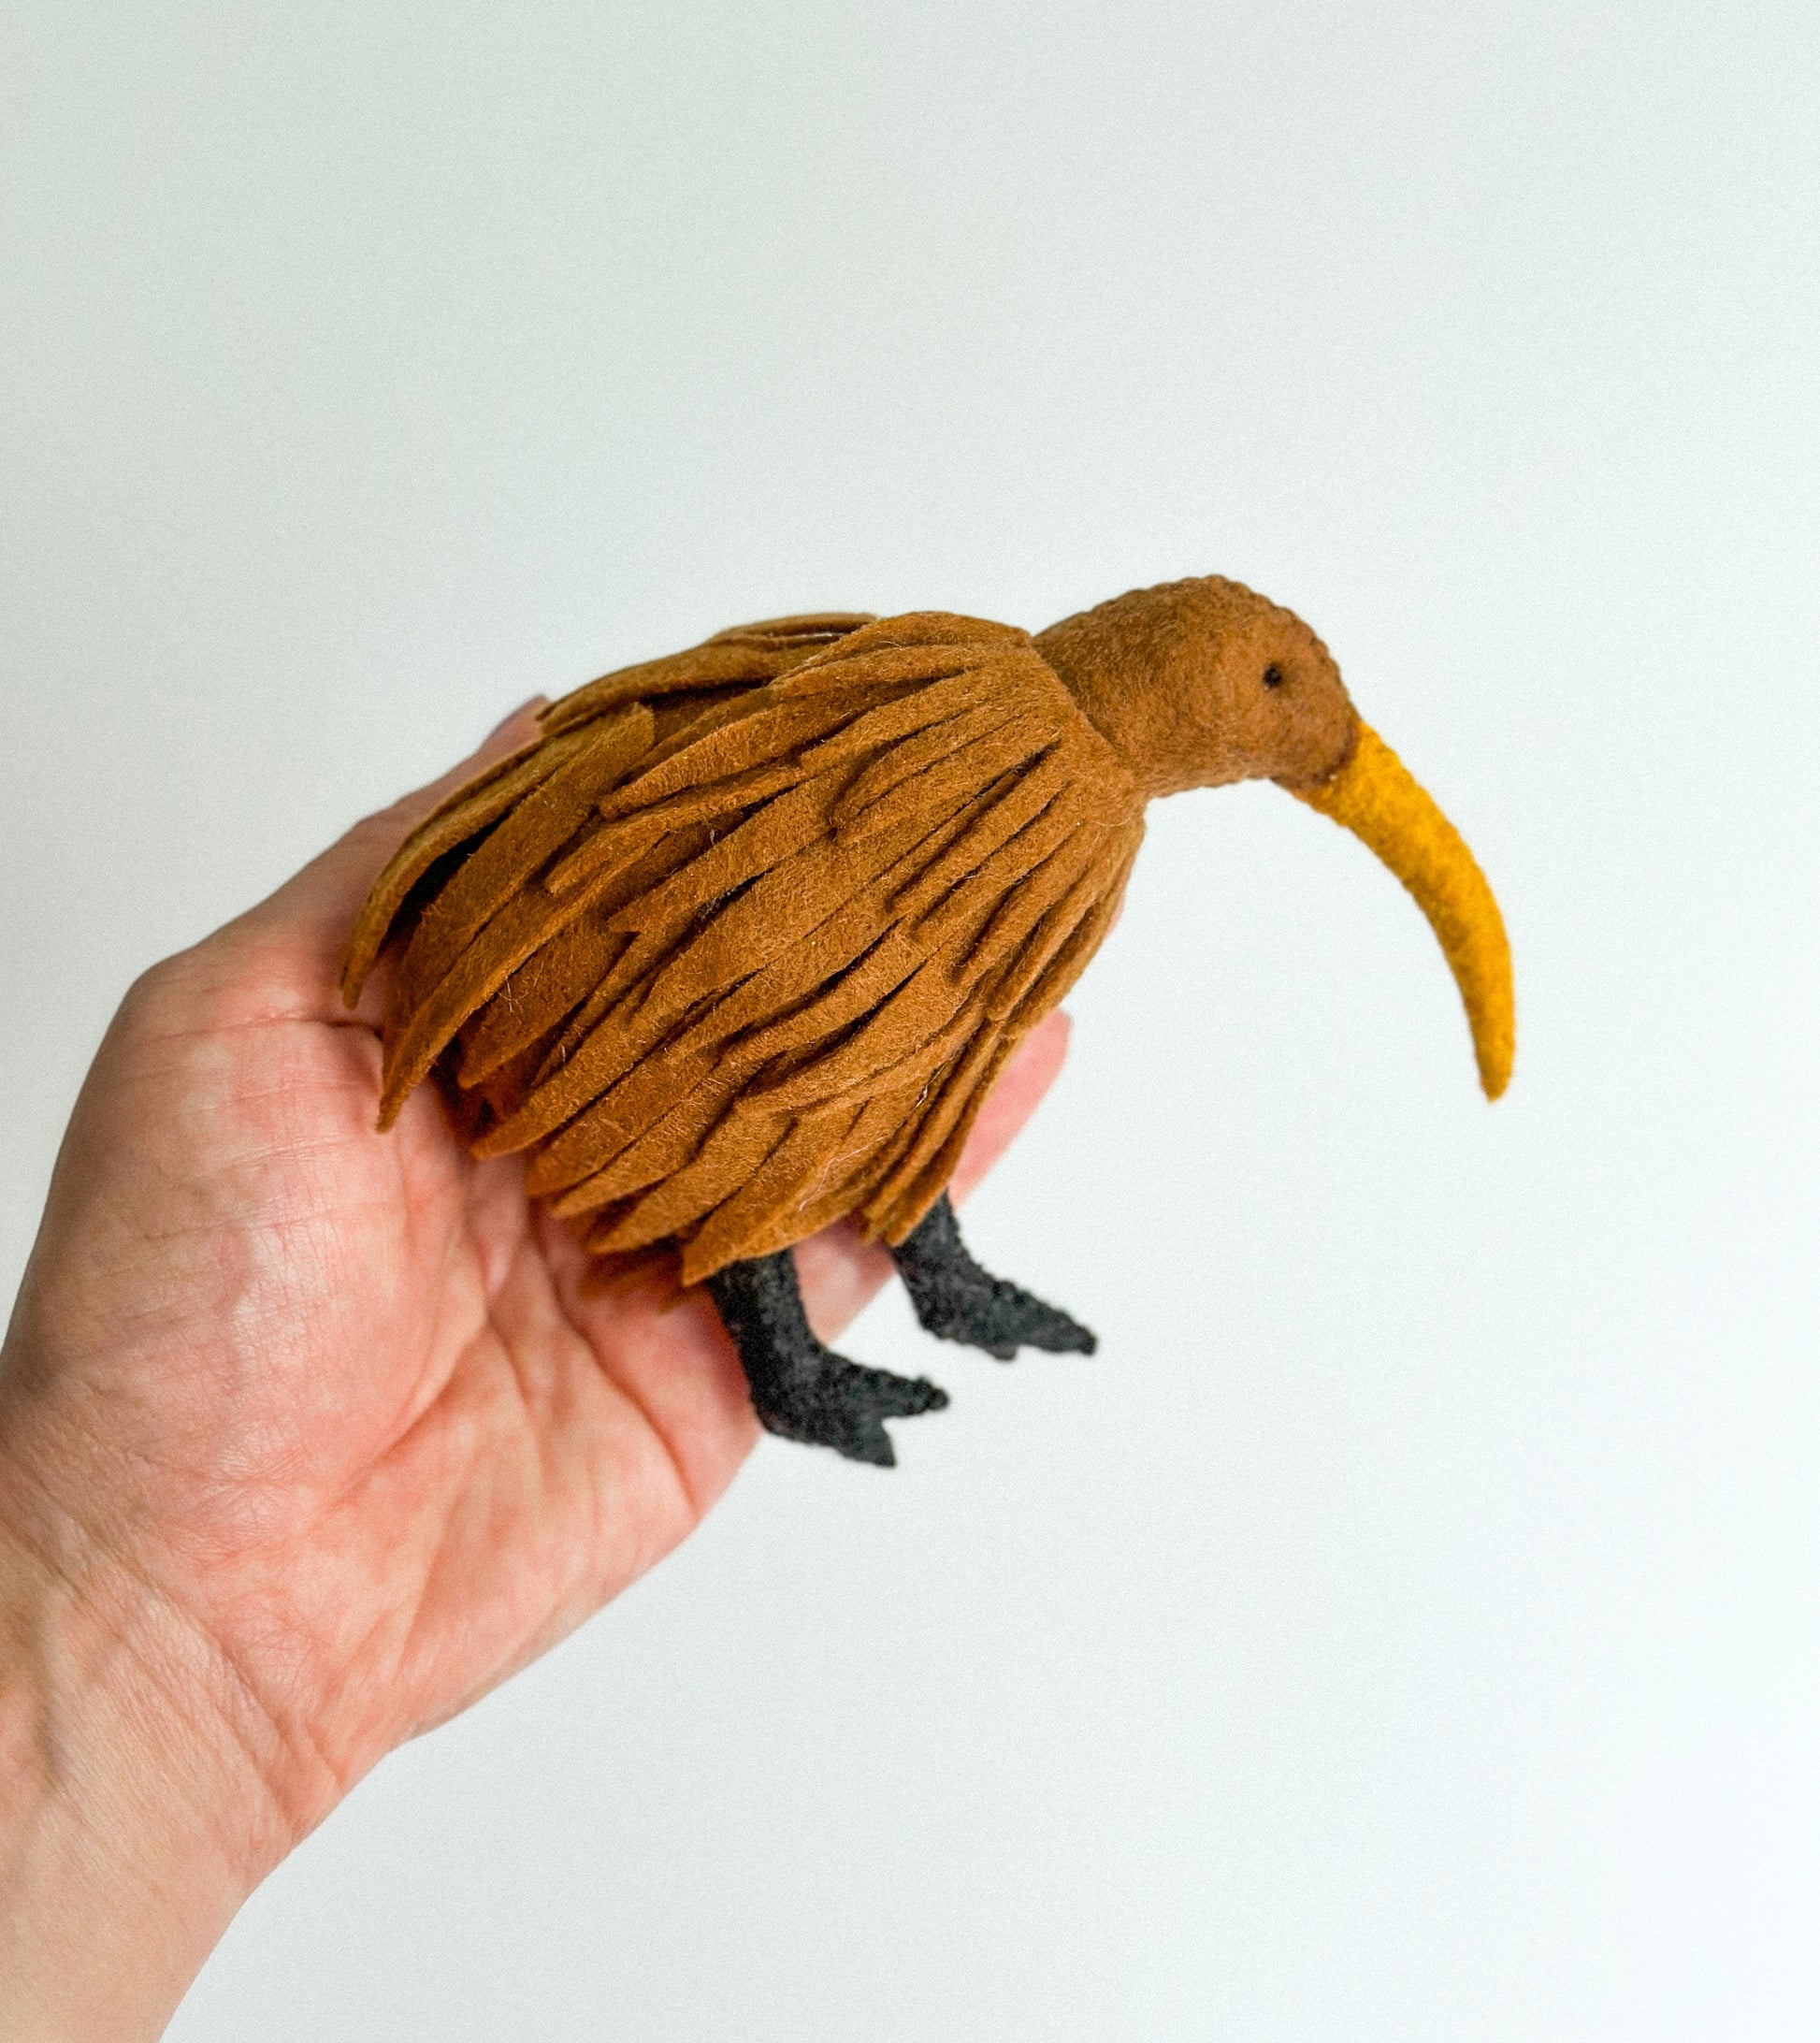 Handcrafted Felt Kiwi Apteryx Ornament